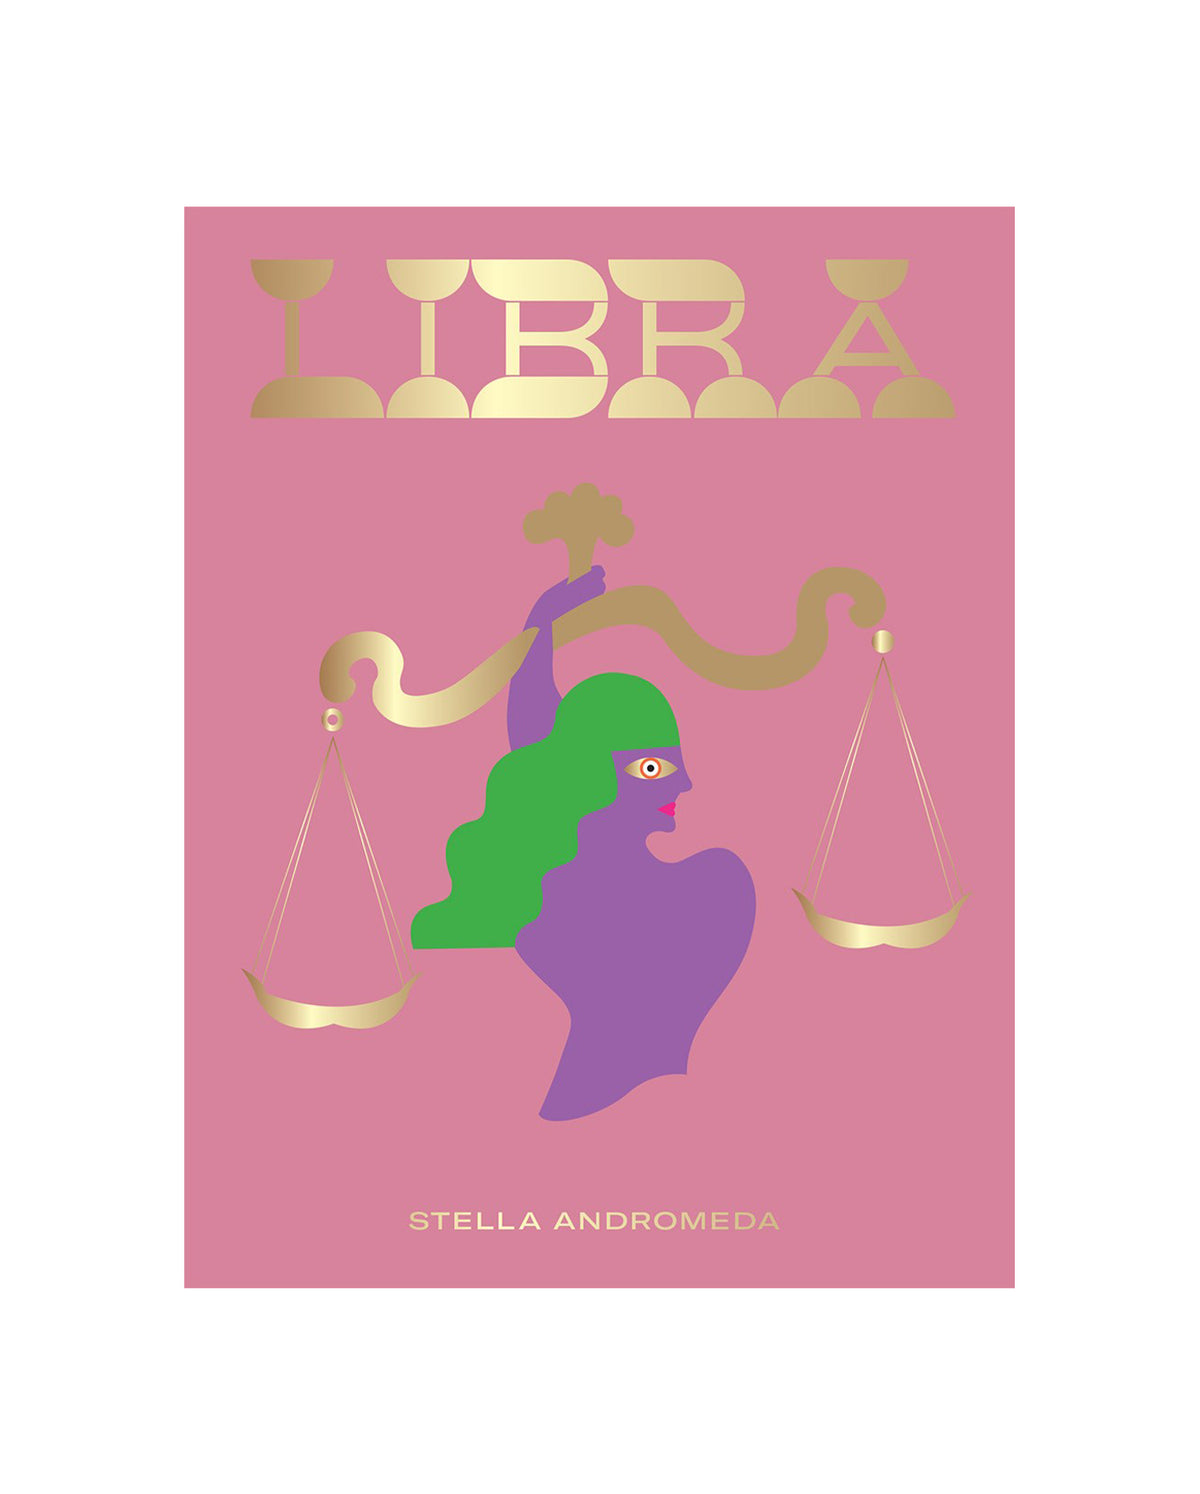 Libra Book